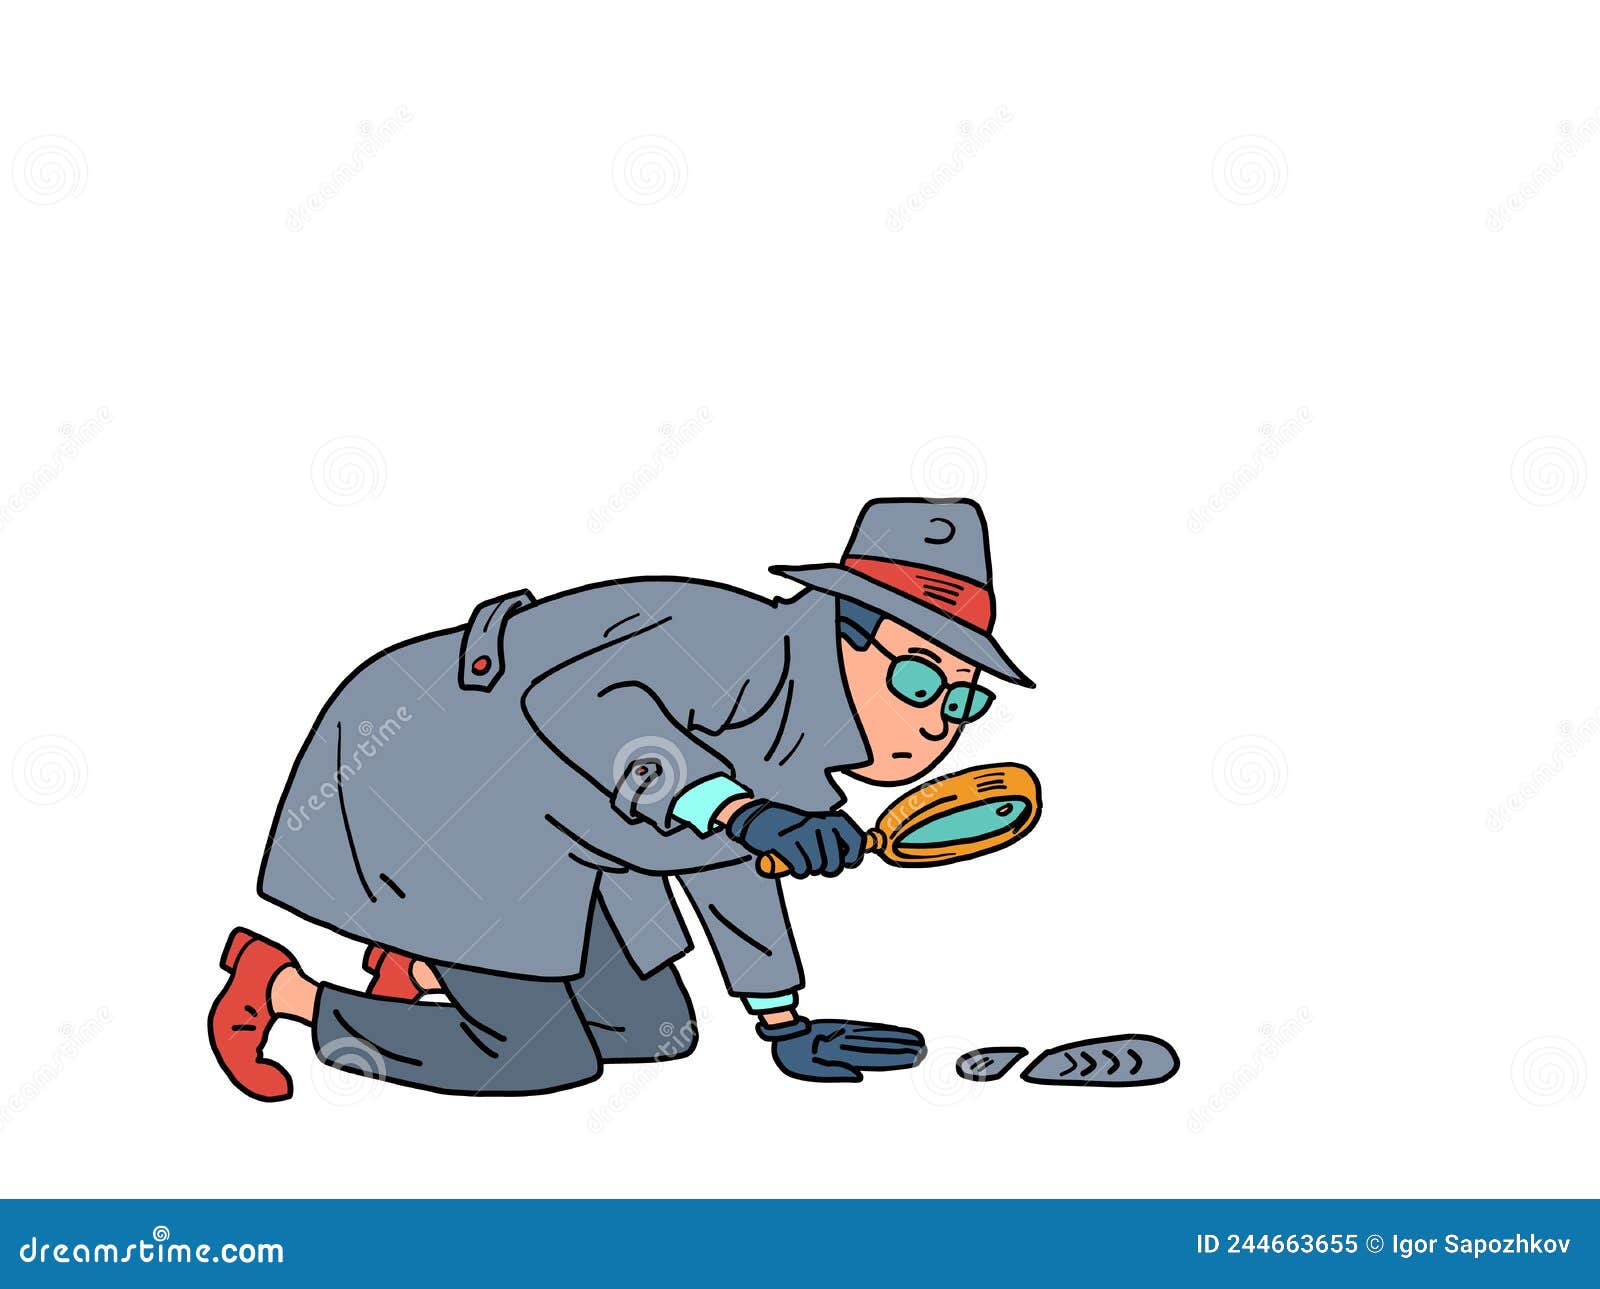 Un hombre naranja detective, sosteniendo una lupa, examinando detenidamente  algo, como se tiende a hacer con una lupa.ba Fotografía de stock - Alamy